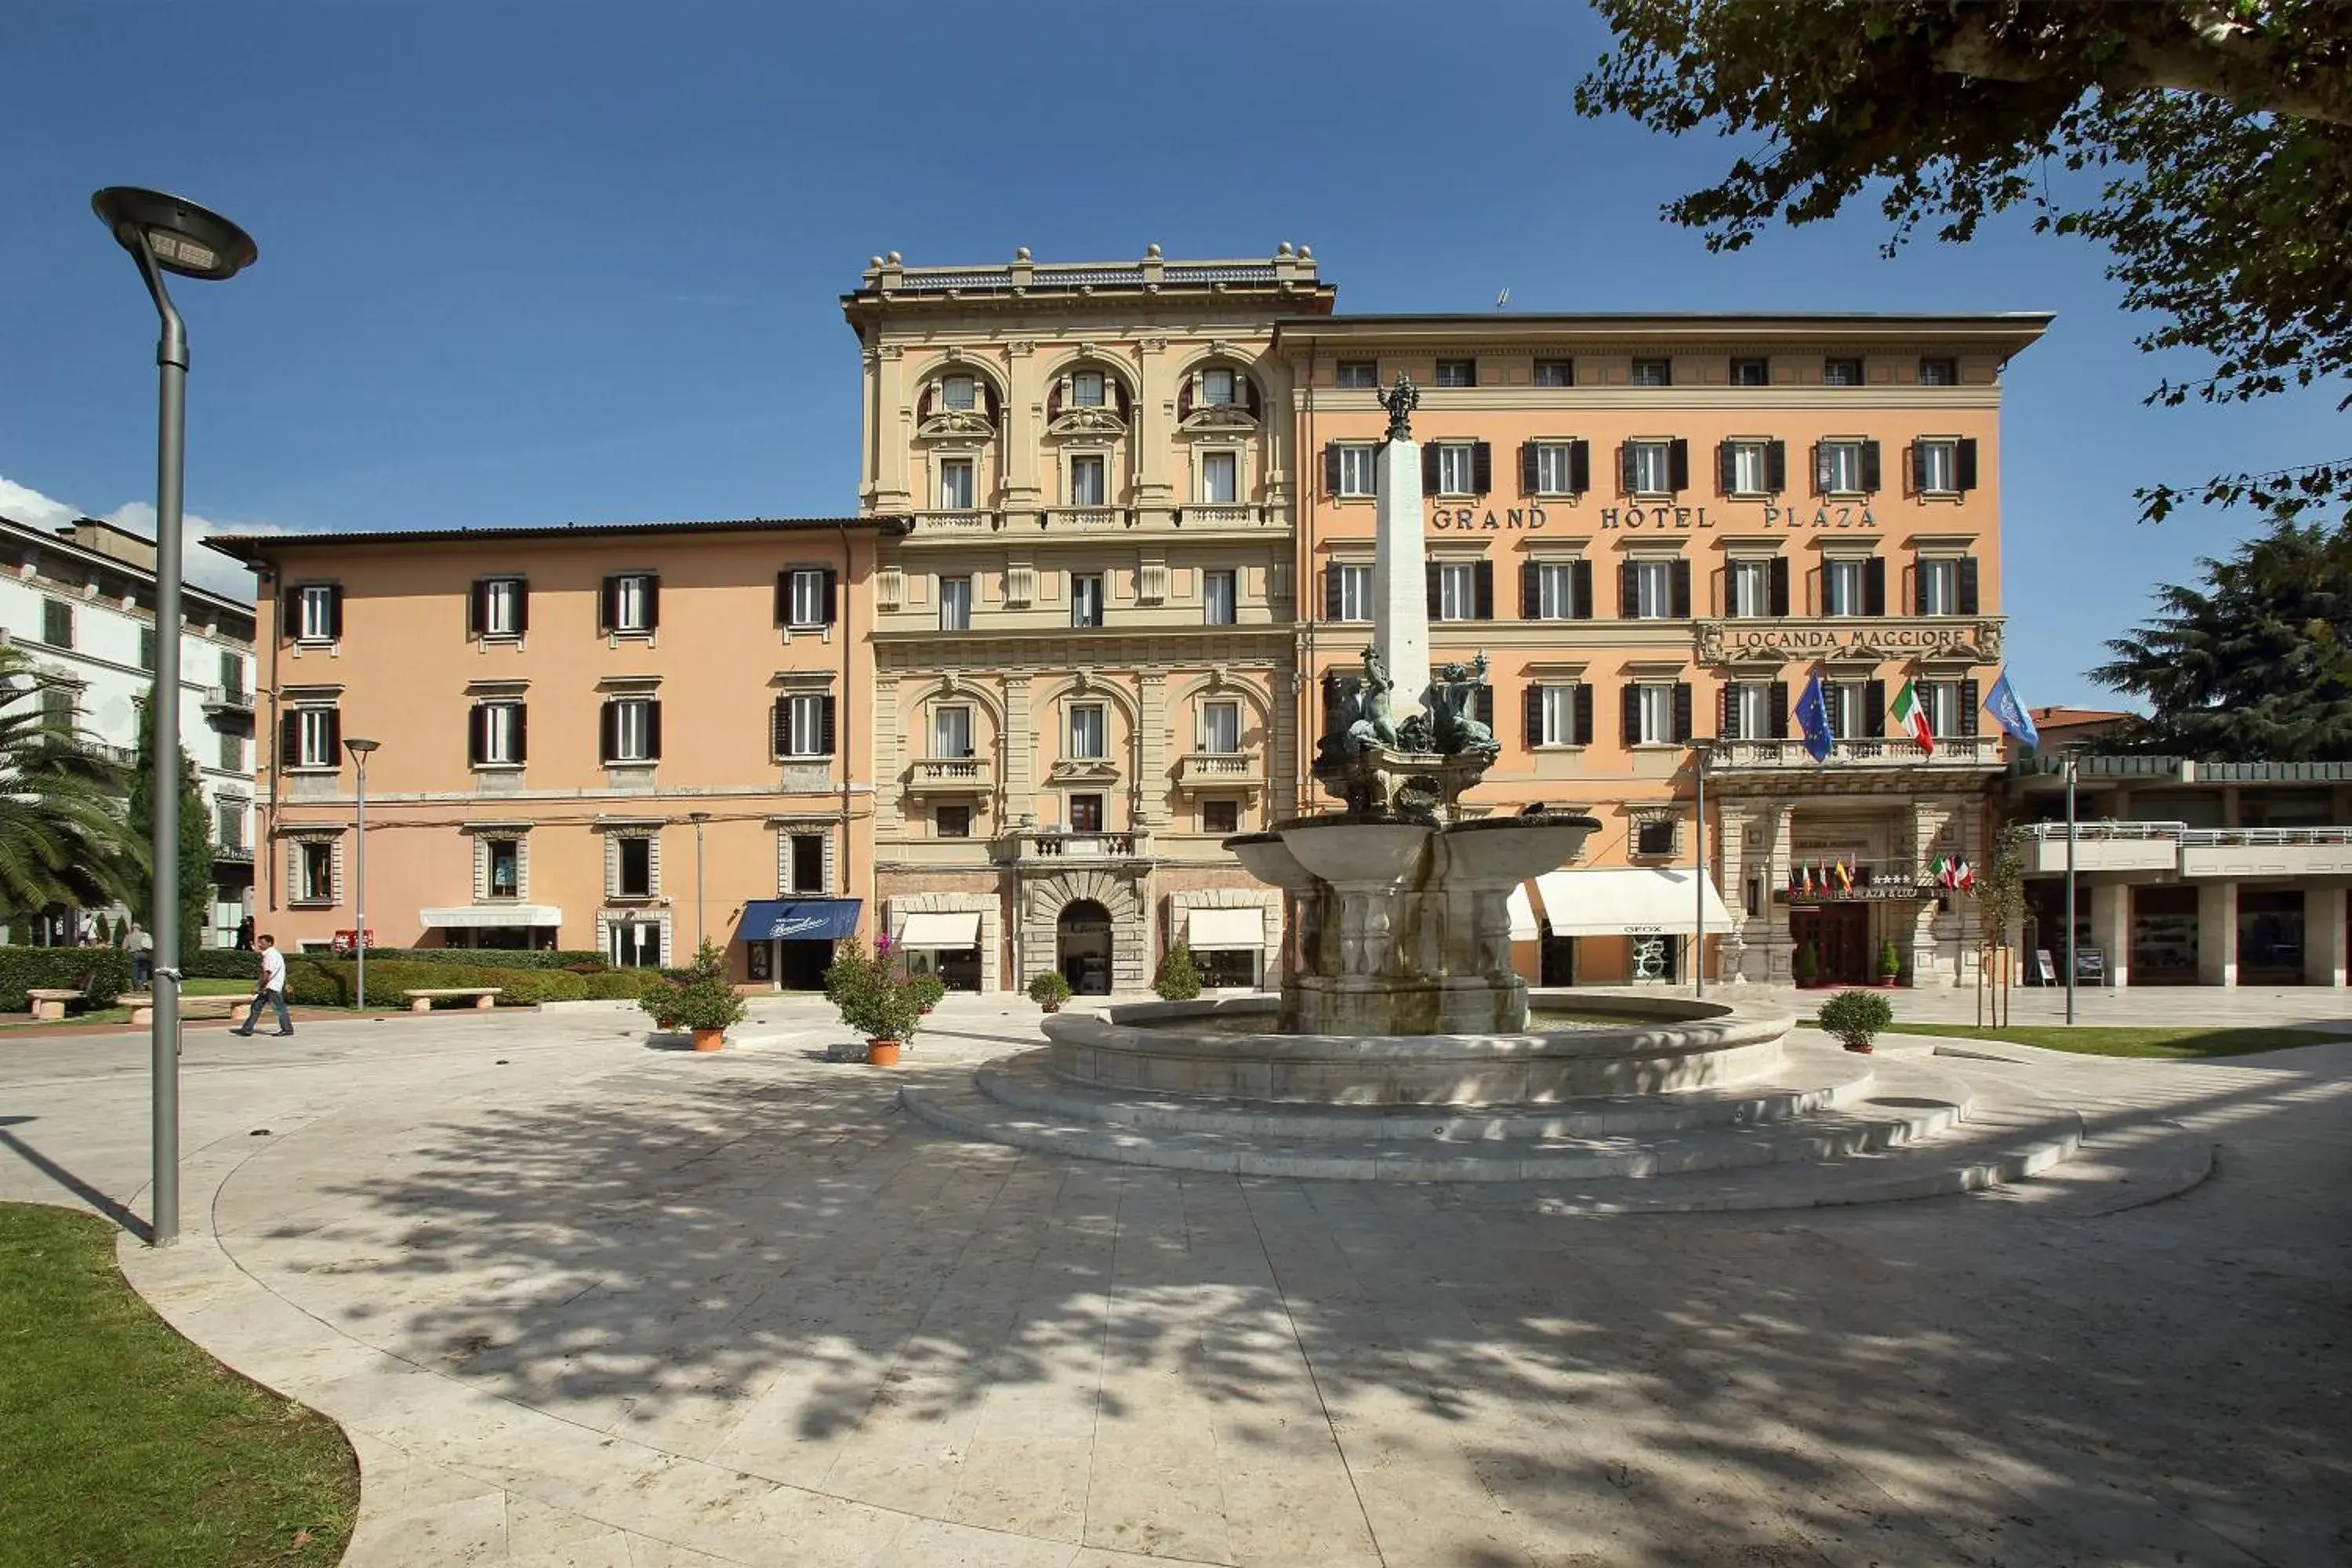 Facade/entrance in Grand Hotel Plaza & Locanda Maggiore